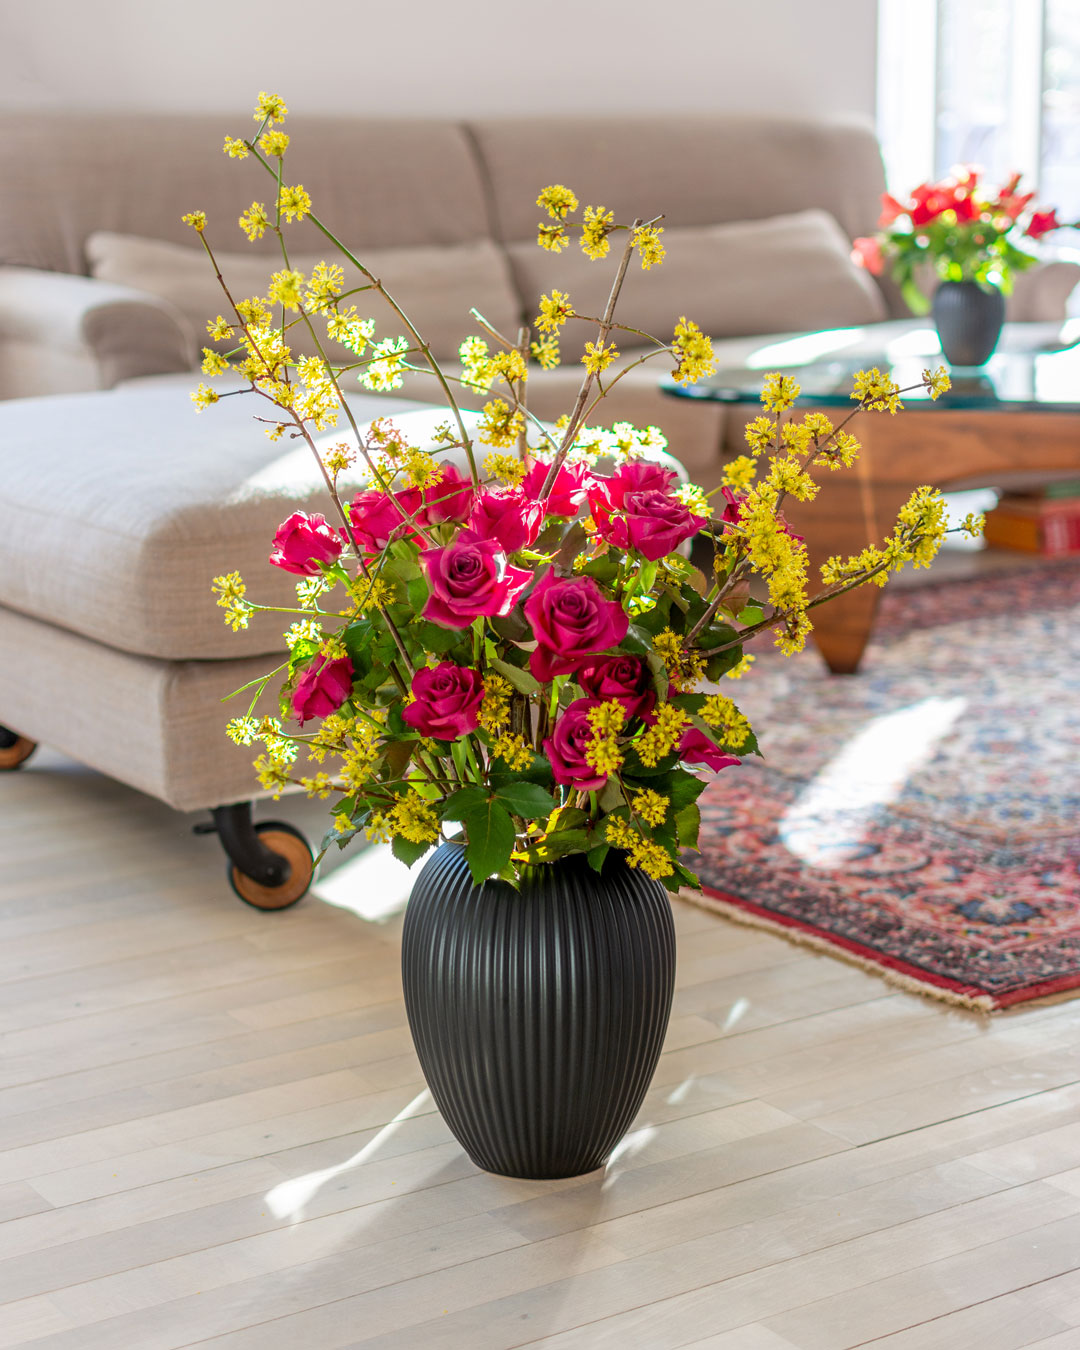 Sort vase i keramik fra Michael Andersen på stuegulv med gule kirsebærkornel blomster og ceriserøde roser